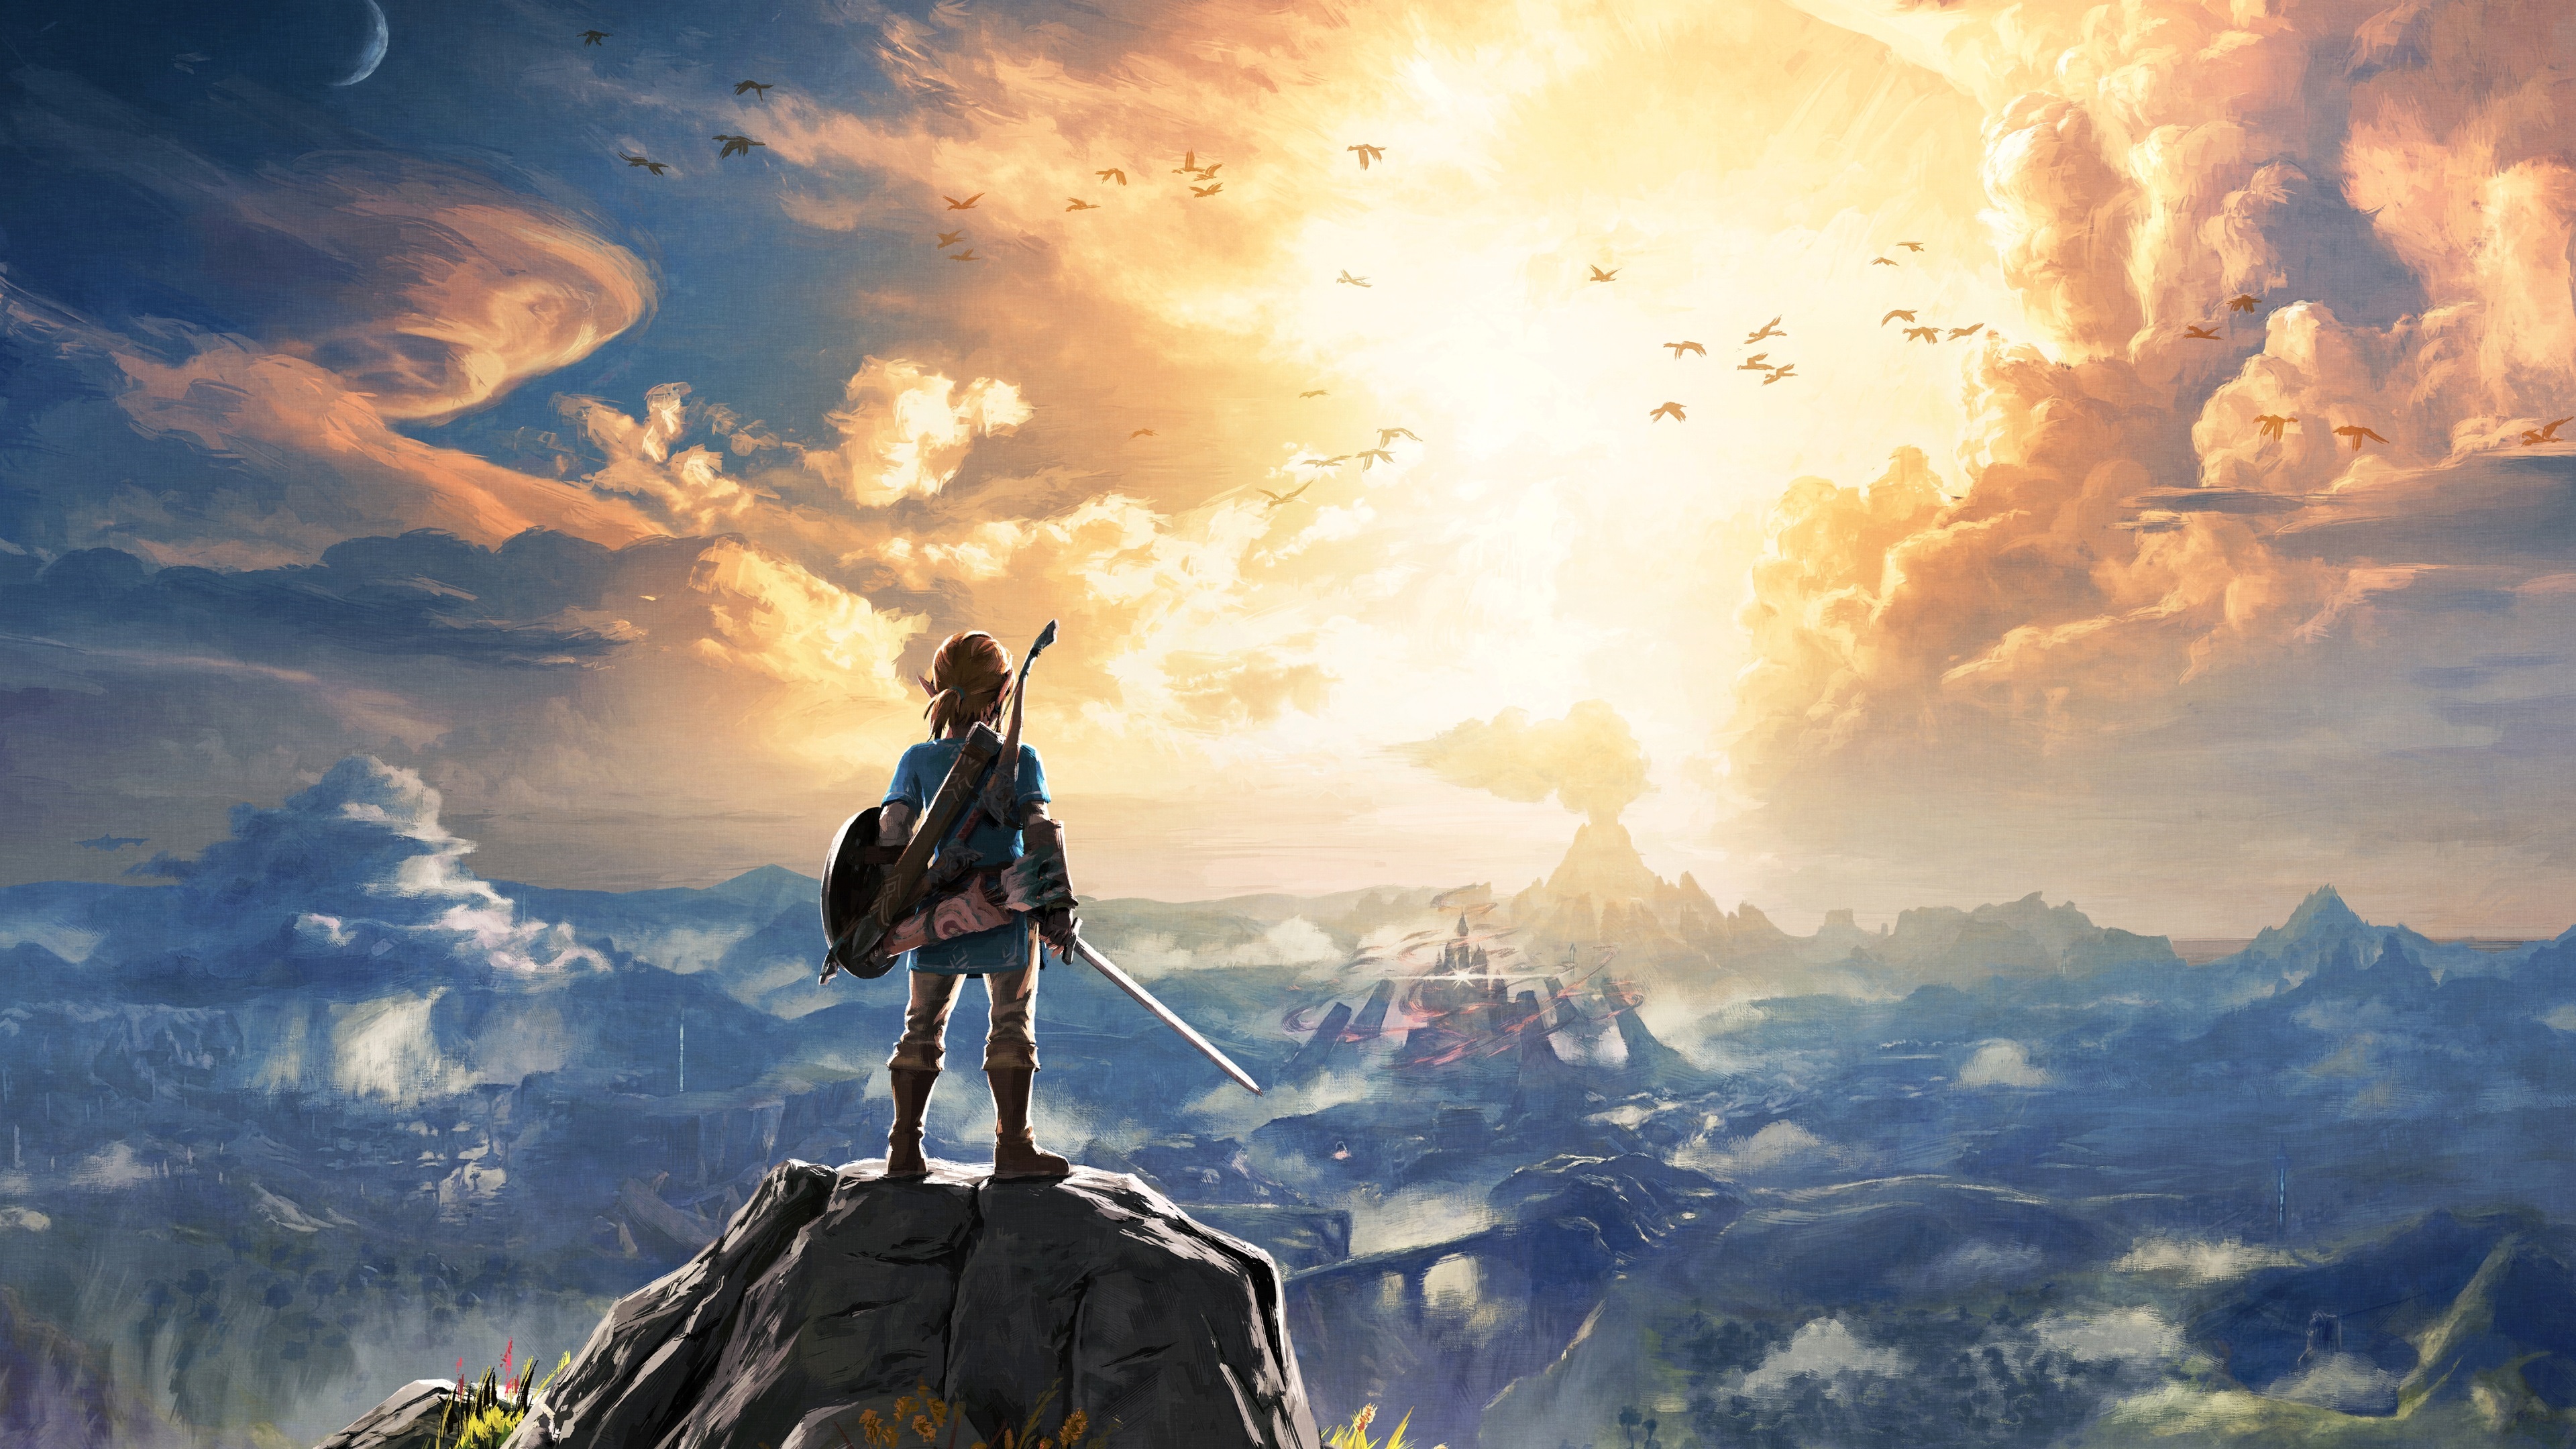 The Legend Of Zelda Link The Legend Of Zelda Breath Of The Wild Artwork Video Games 3840x2160